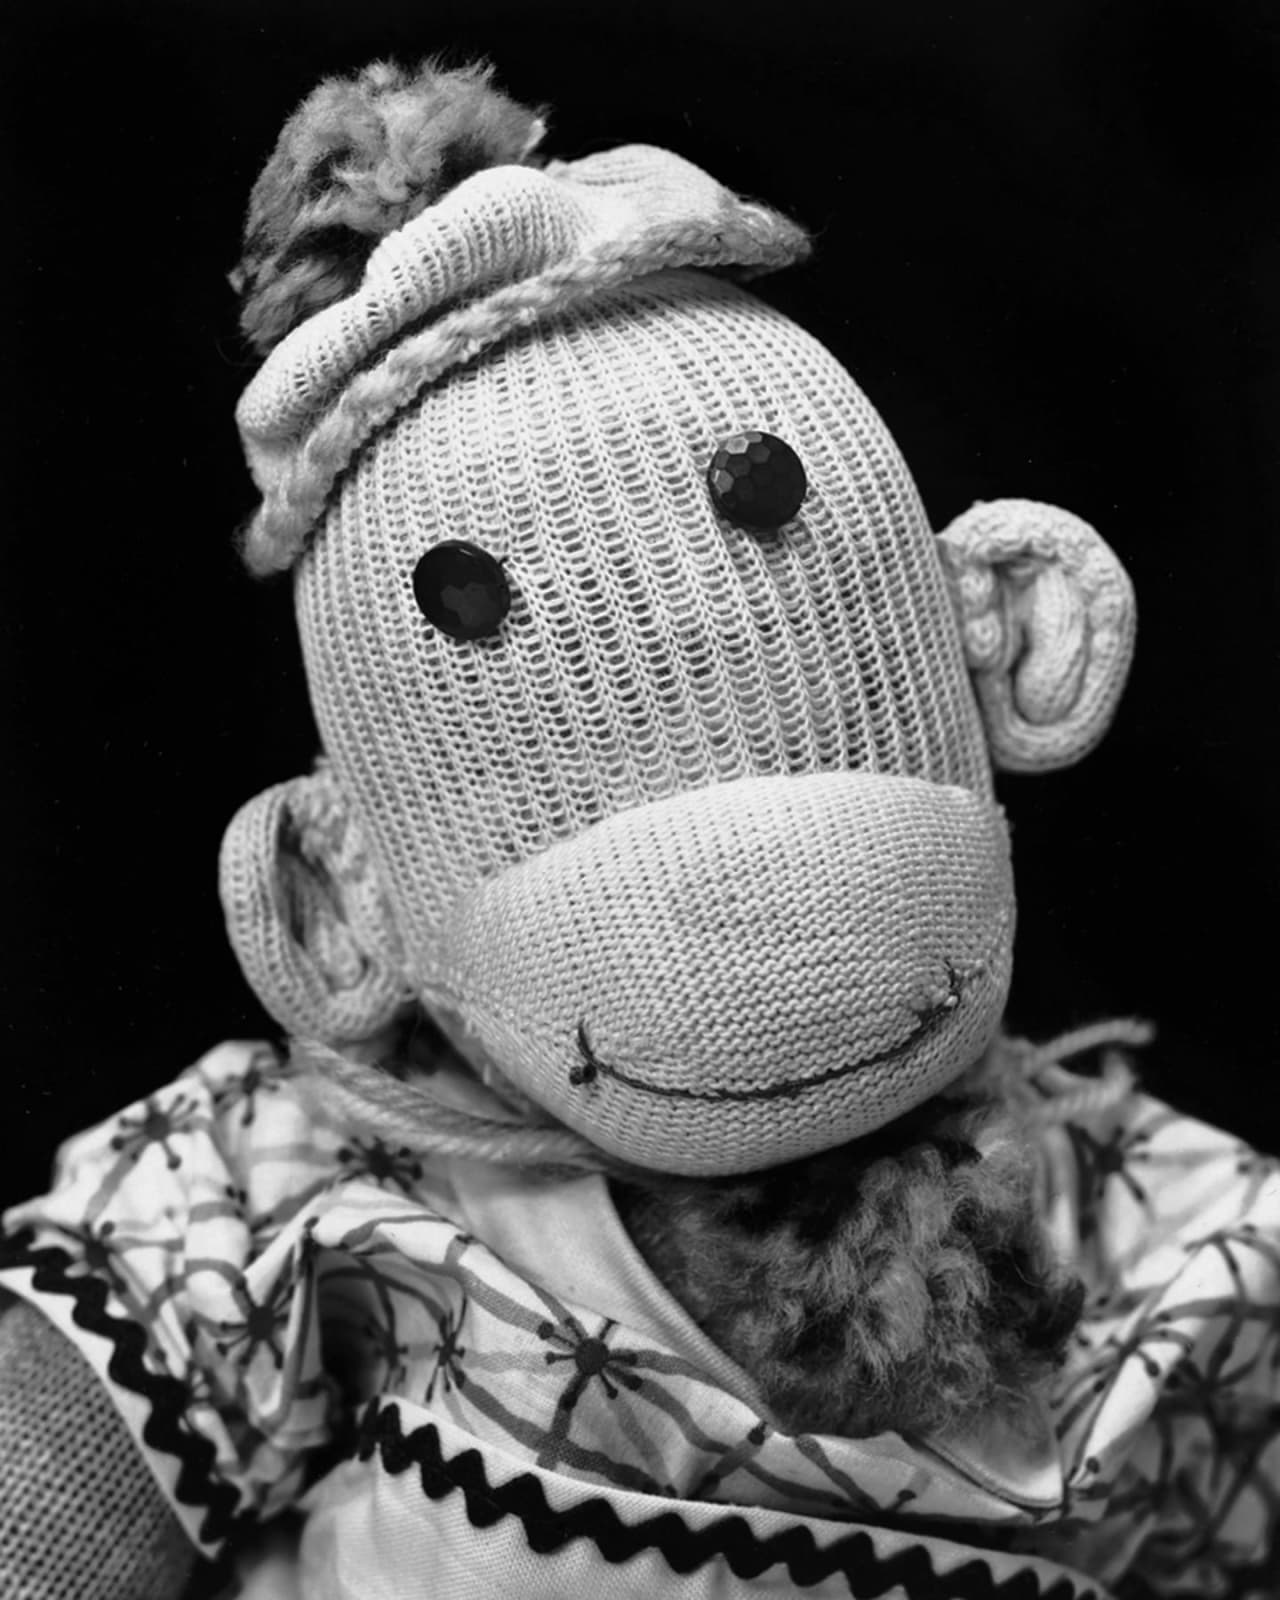 Arne Svenson, Sock Monkey 167, 2002